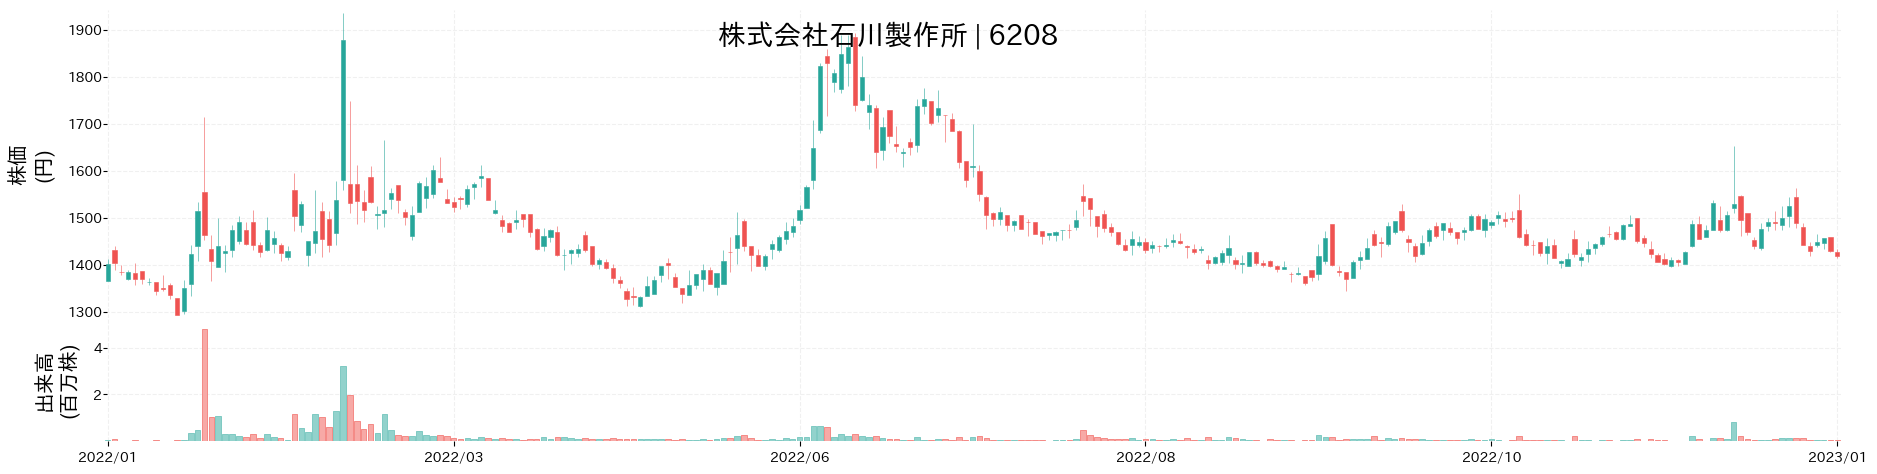 石川製作所の株価推移(2022)